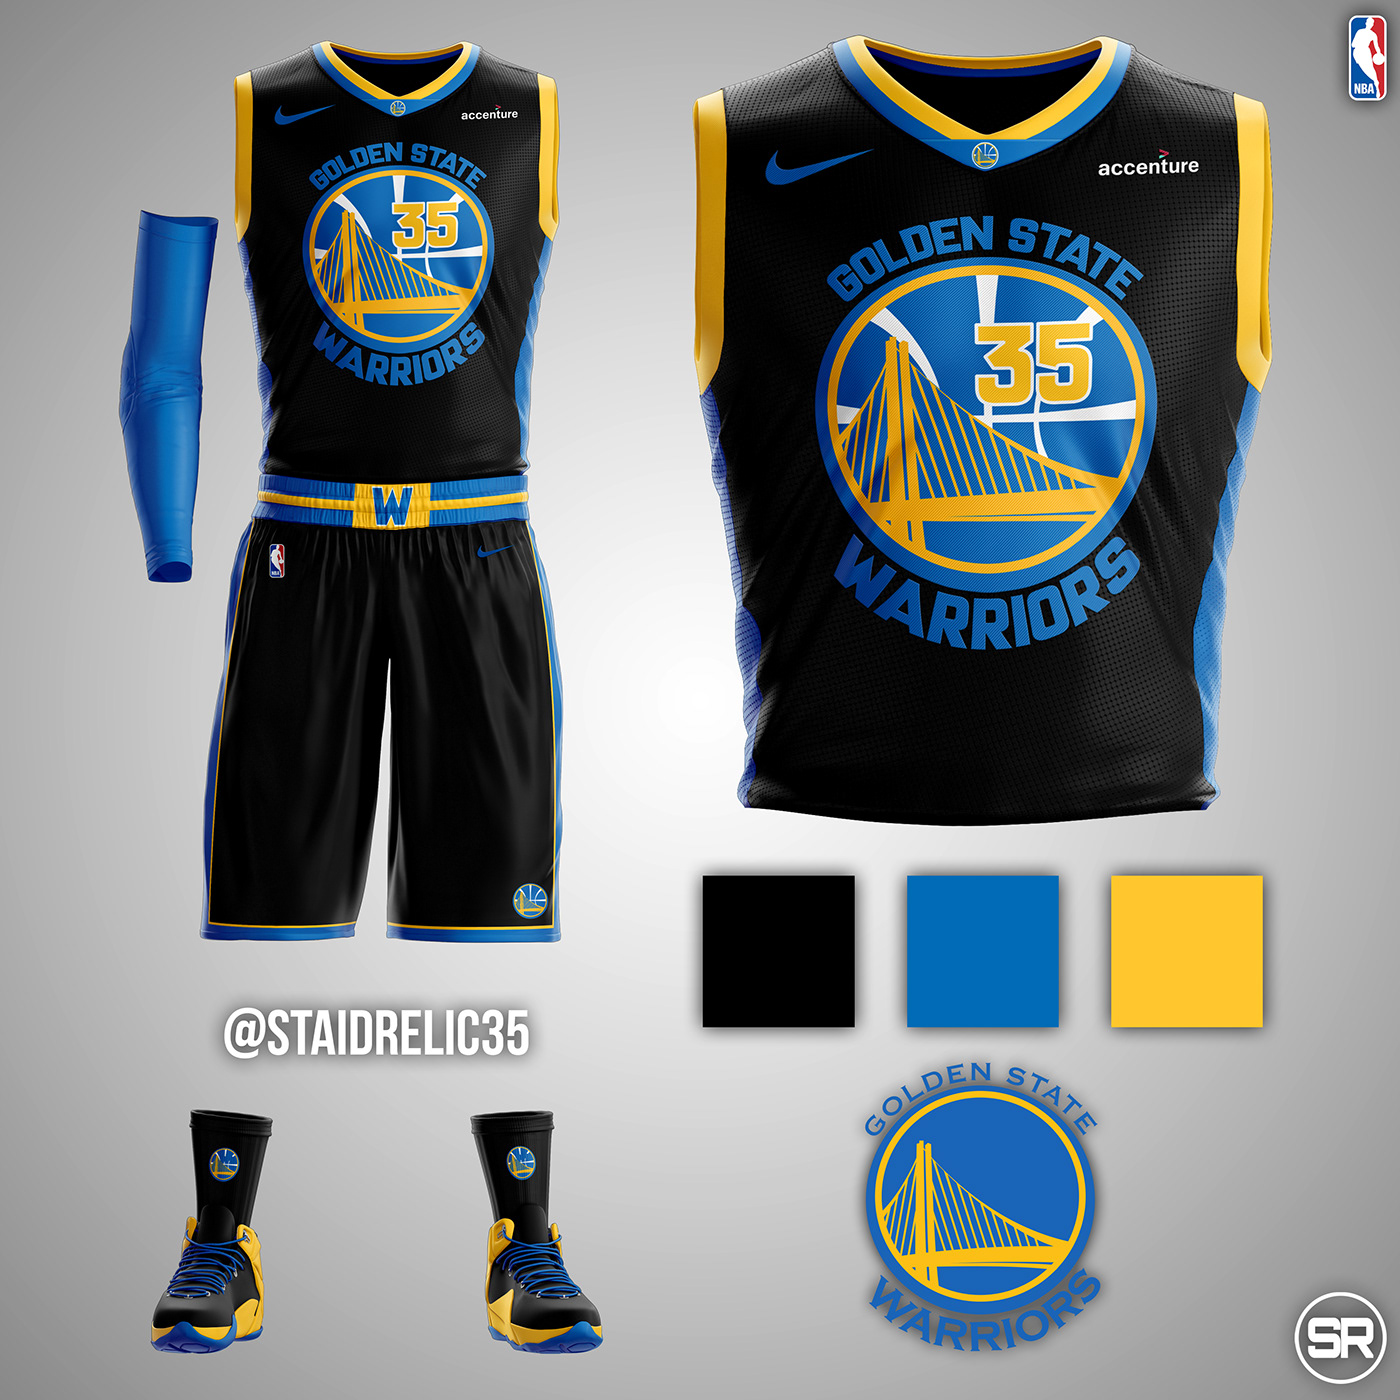 NBA Uniform Concepts from Mikey Halim @Srelix